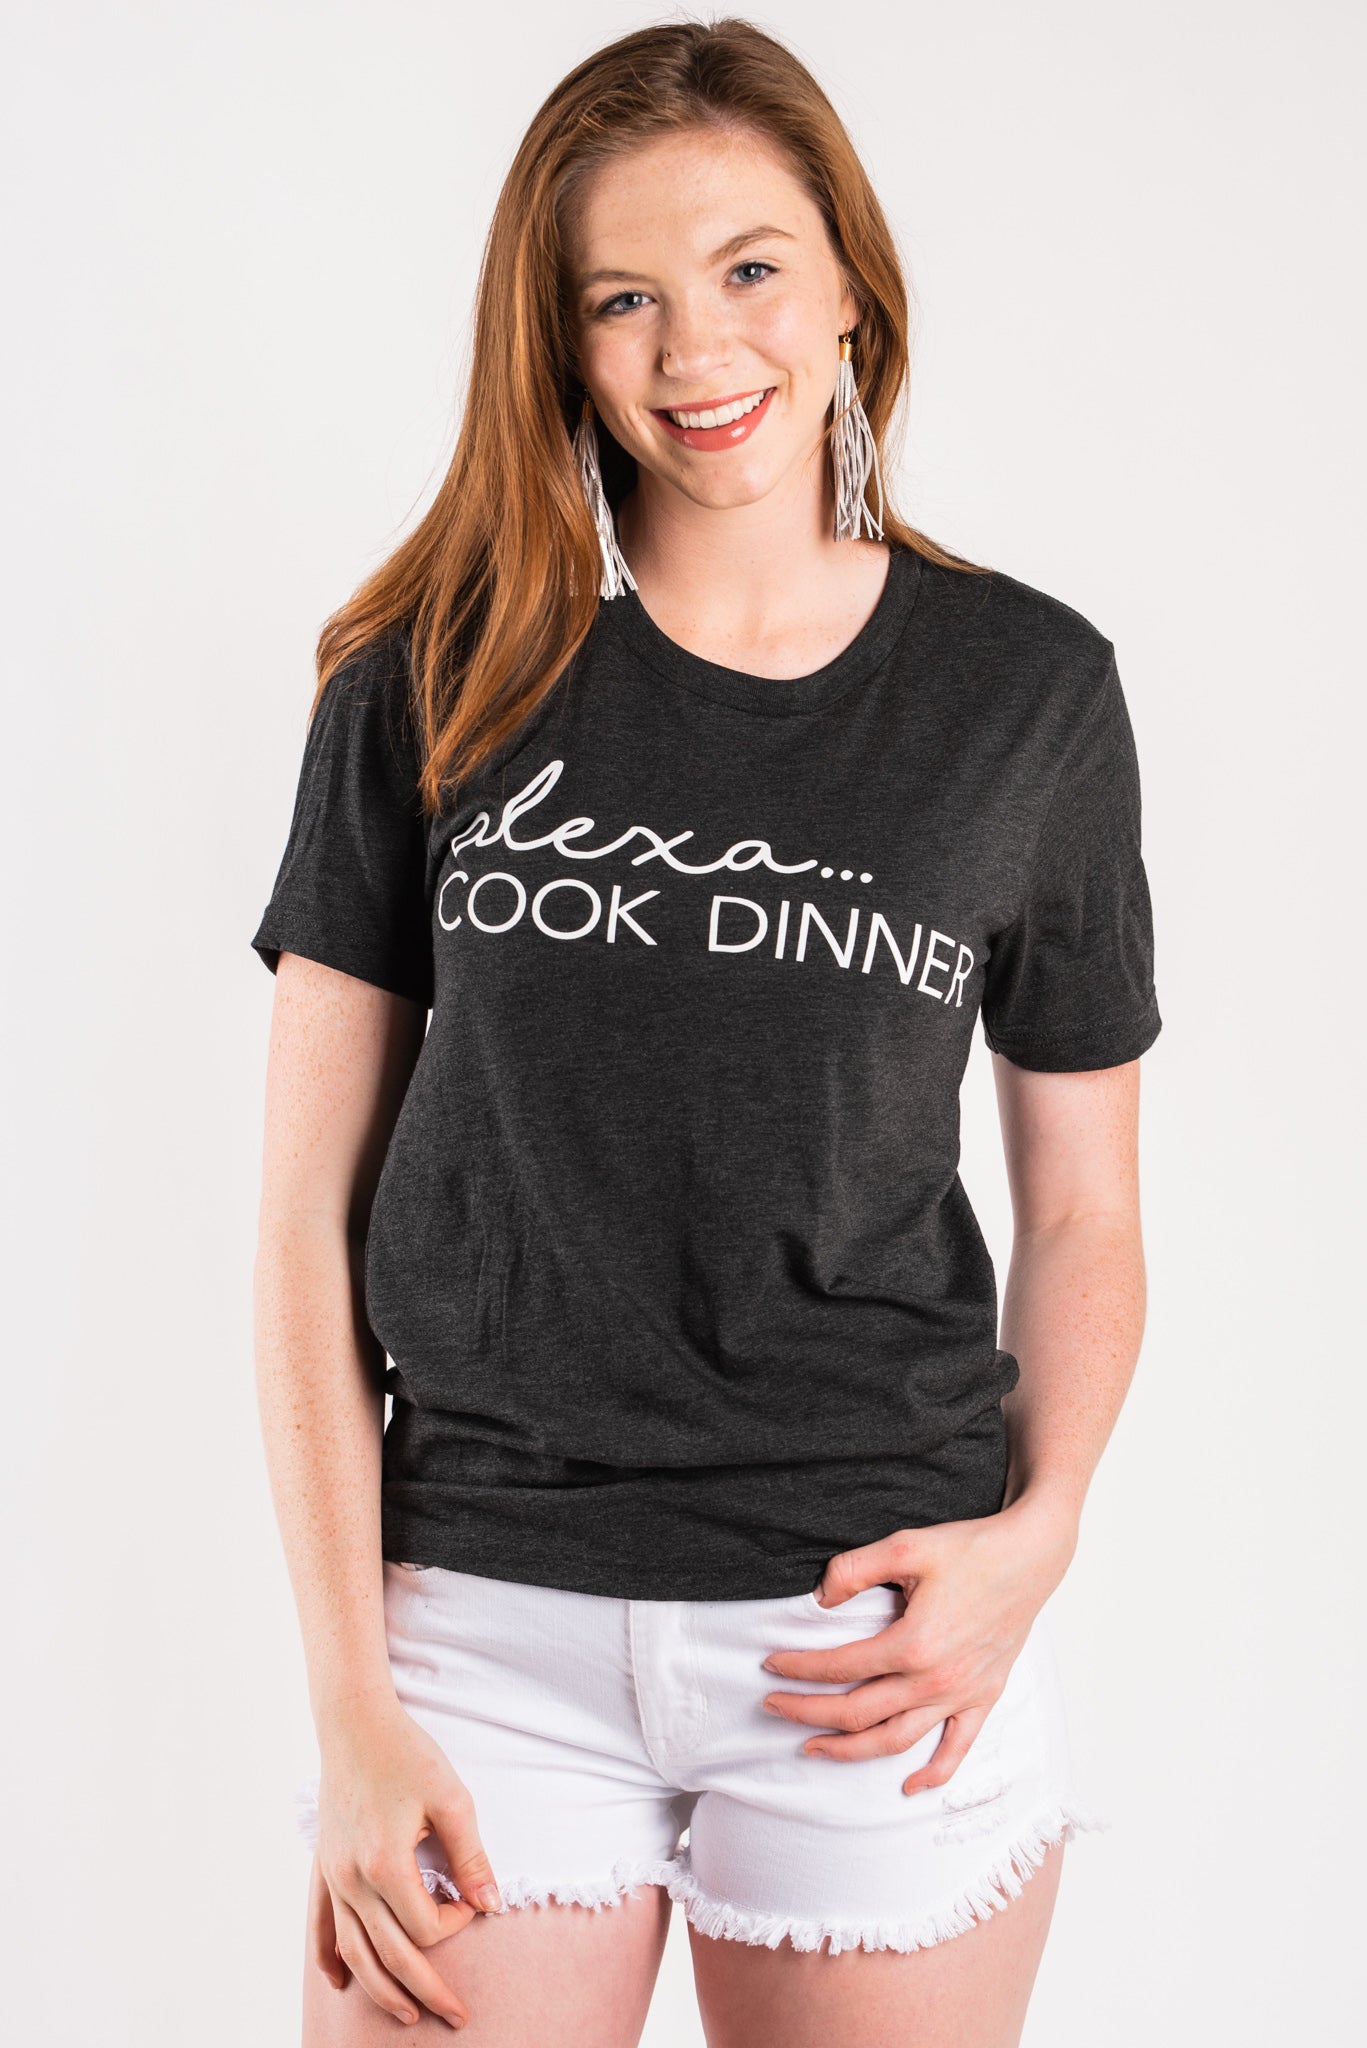 Alexa cook dinner unisex short sleeve t-shirt charcoal